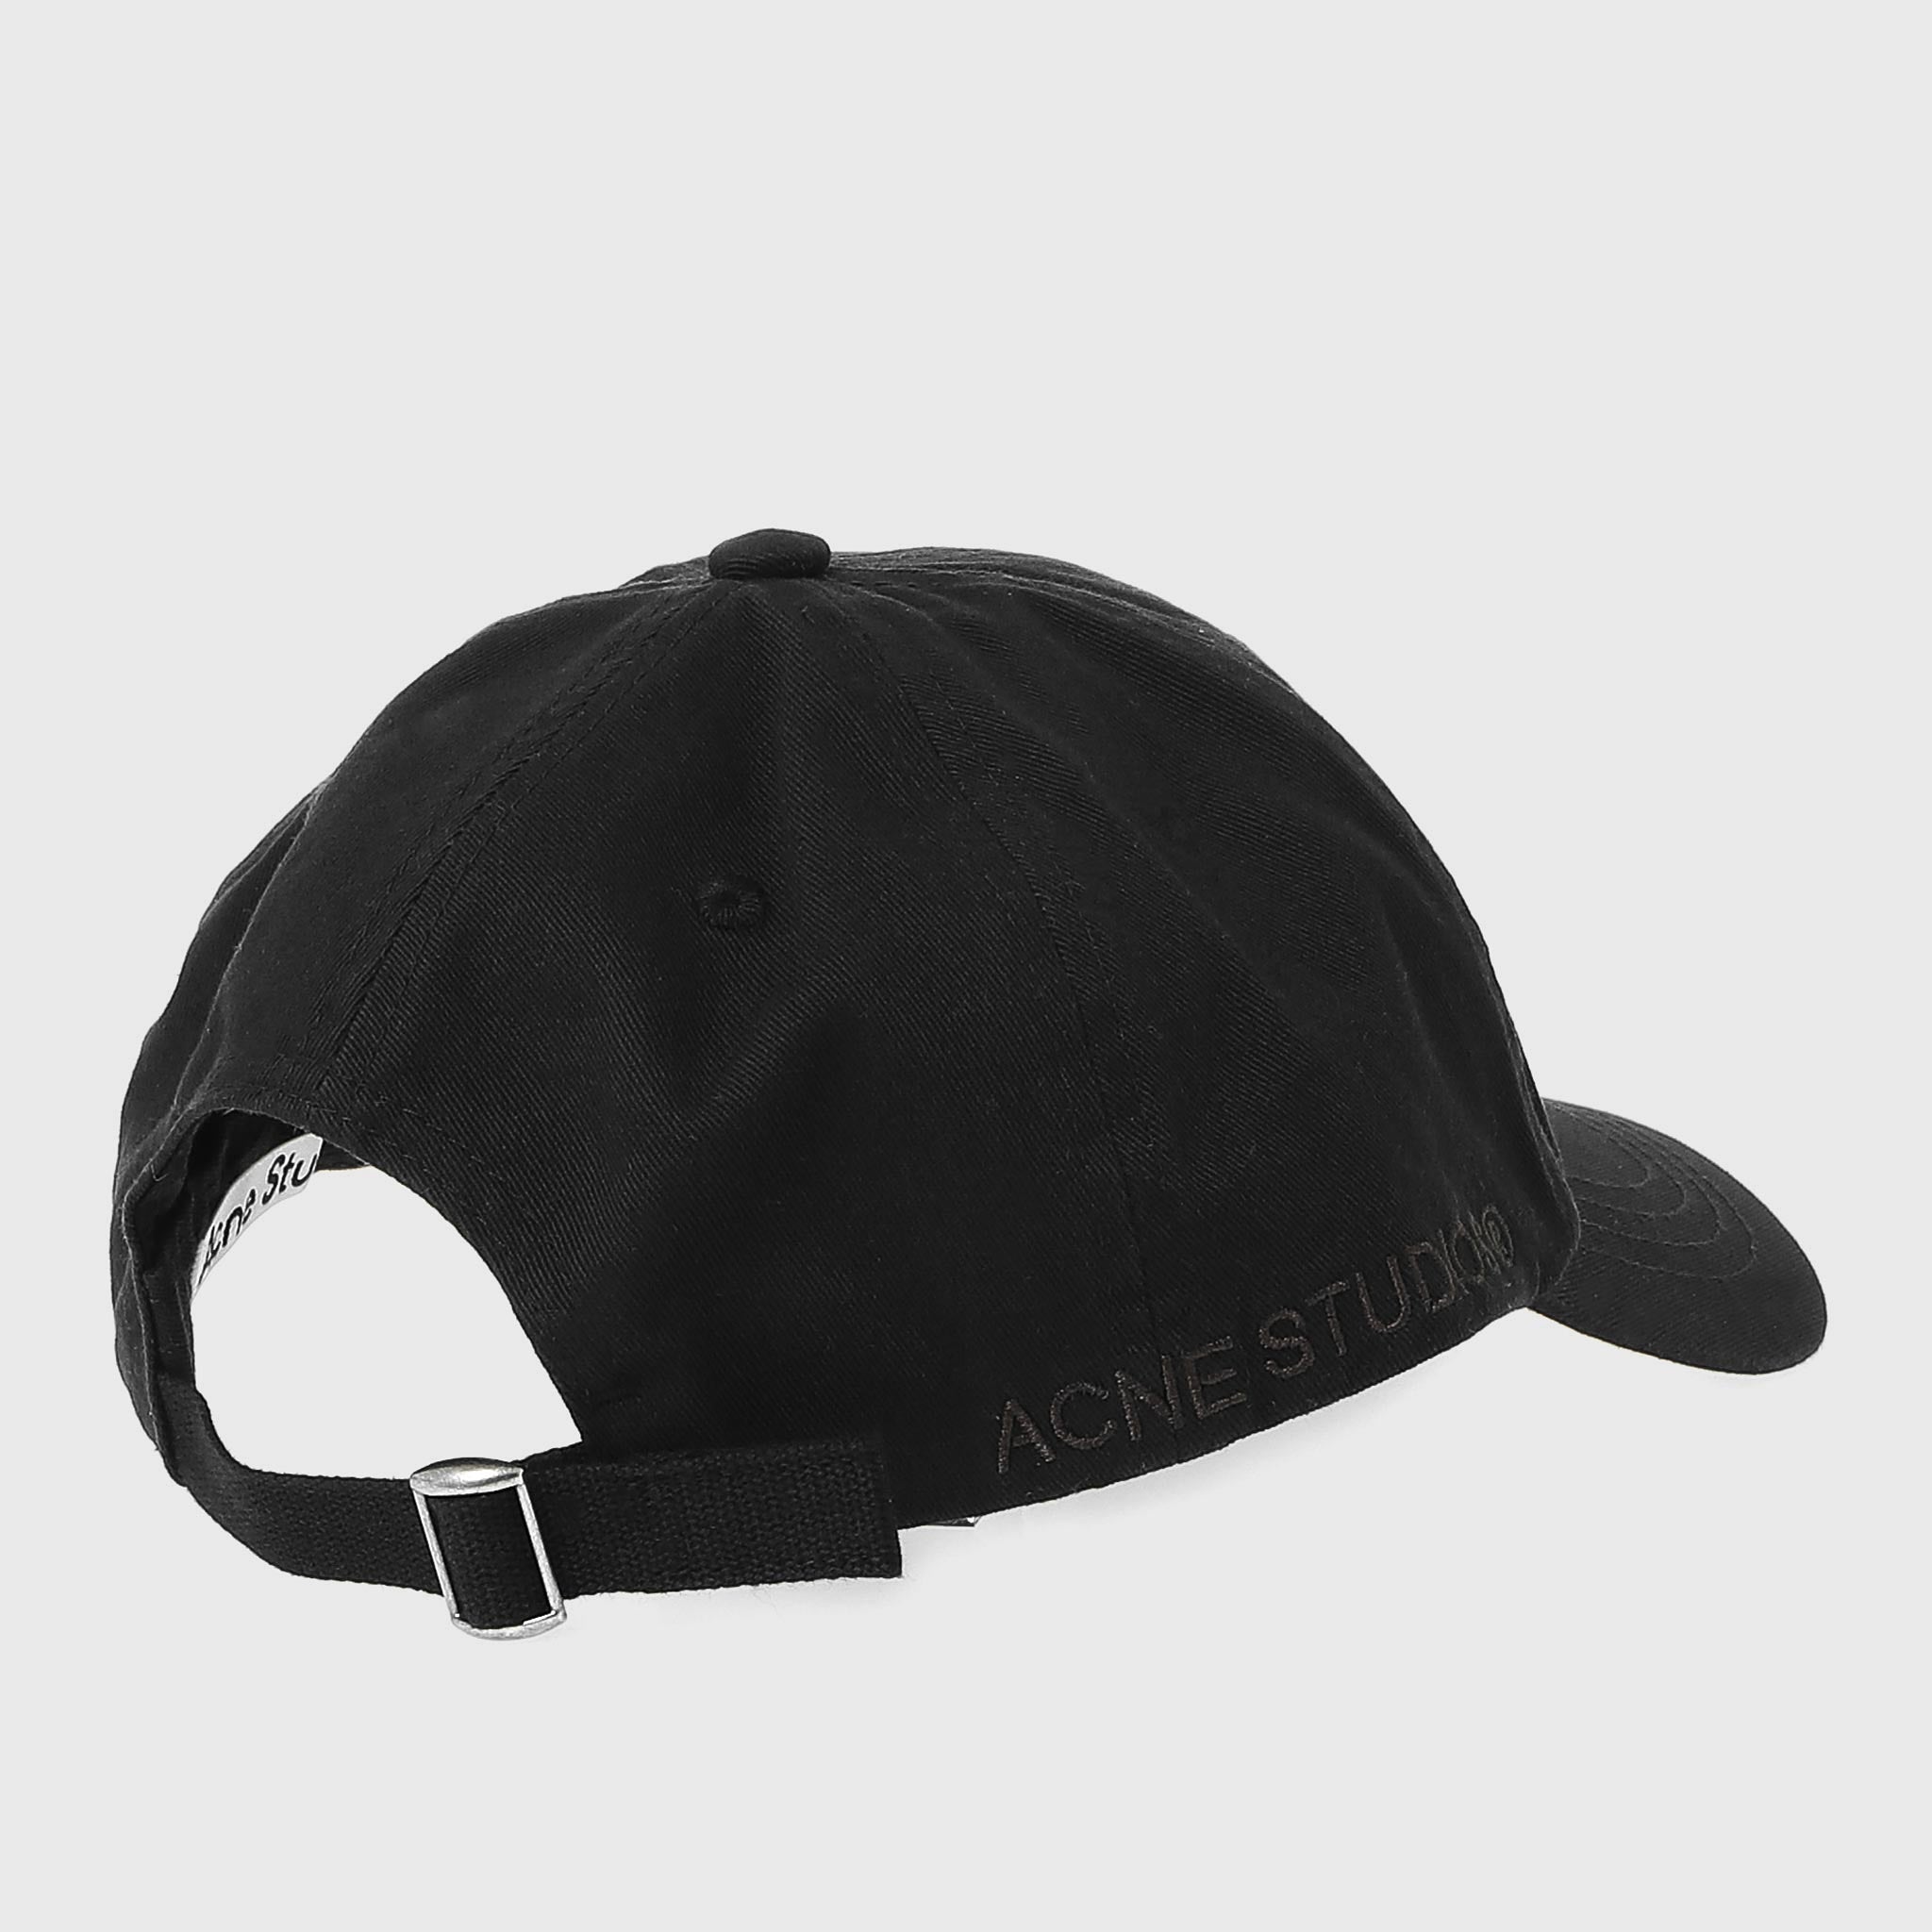 アクネ ストゥディオズ ACNE STUDIO 帽子 レディース メンズ キャップ COTTON BASEBALL CAP FN-UX-HATS000148 C40224